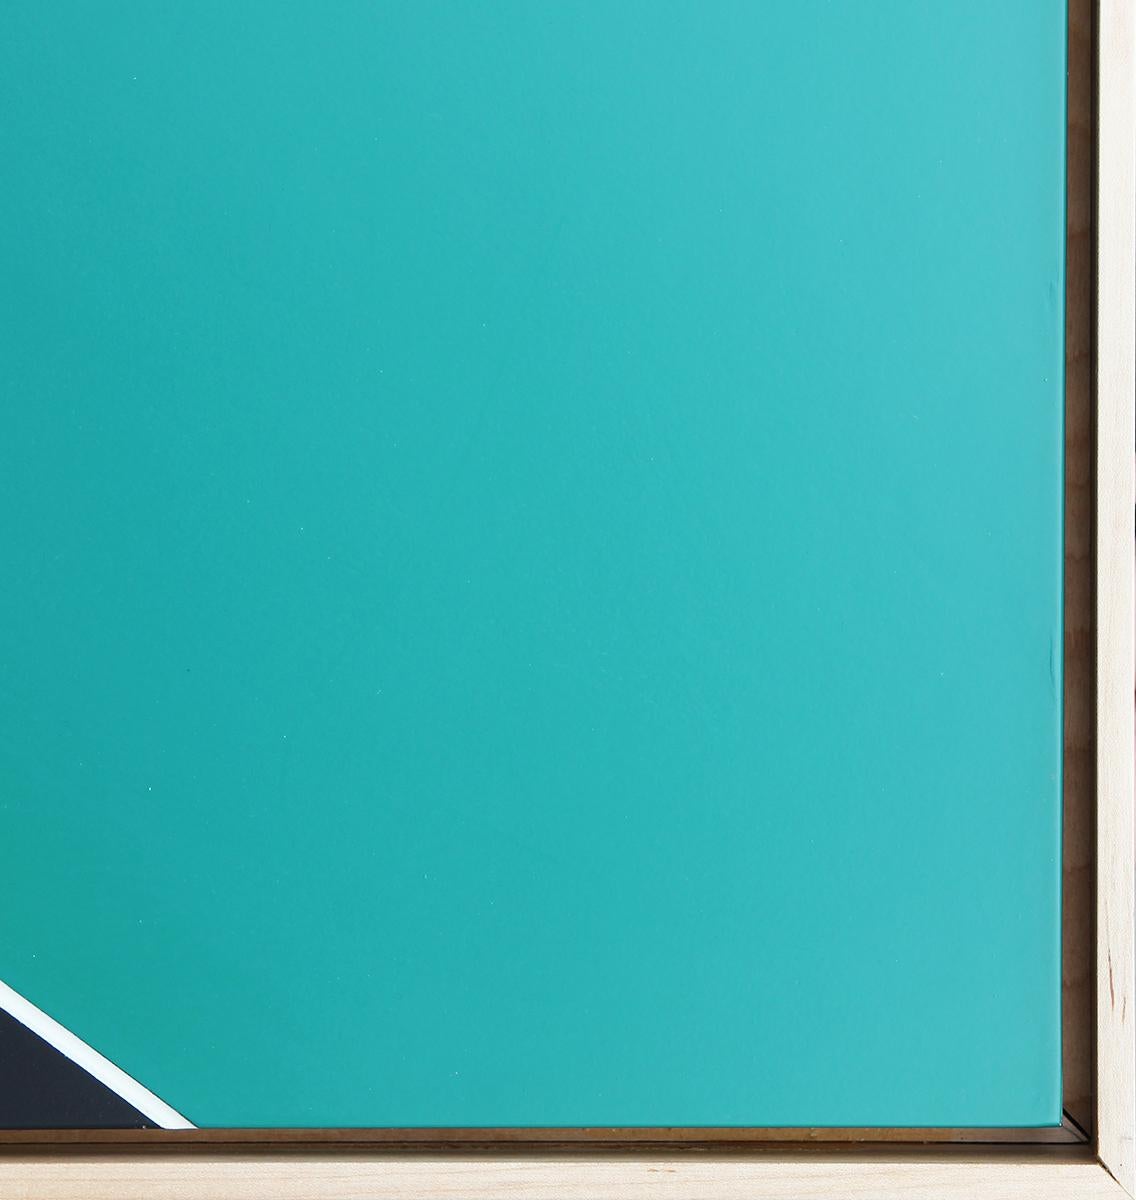 Blaugrünes, schwarzes und weißes abstraktes geometrisches Mischtechnik-Gemälde des Künstlers Matthew Reeves aus Houston, TX. Auf der Rückseite vom Künstler signiert. Gerahmt in einem schwimmenden Naturholzrahmen.

Abmessungen ohne Rahmen: H 35.88